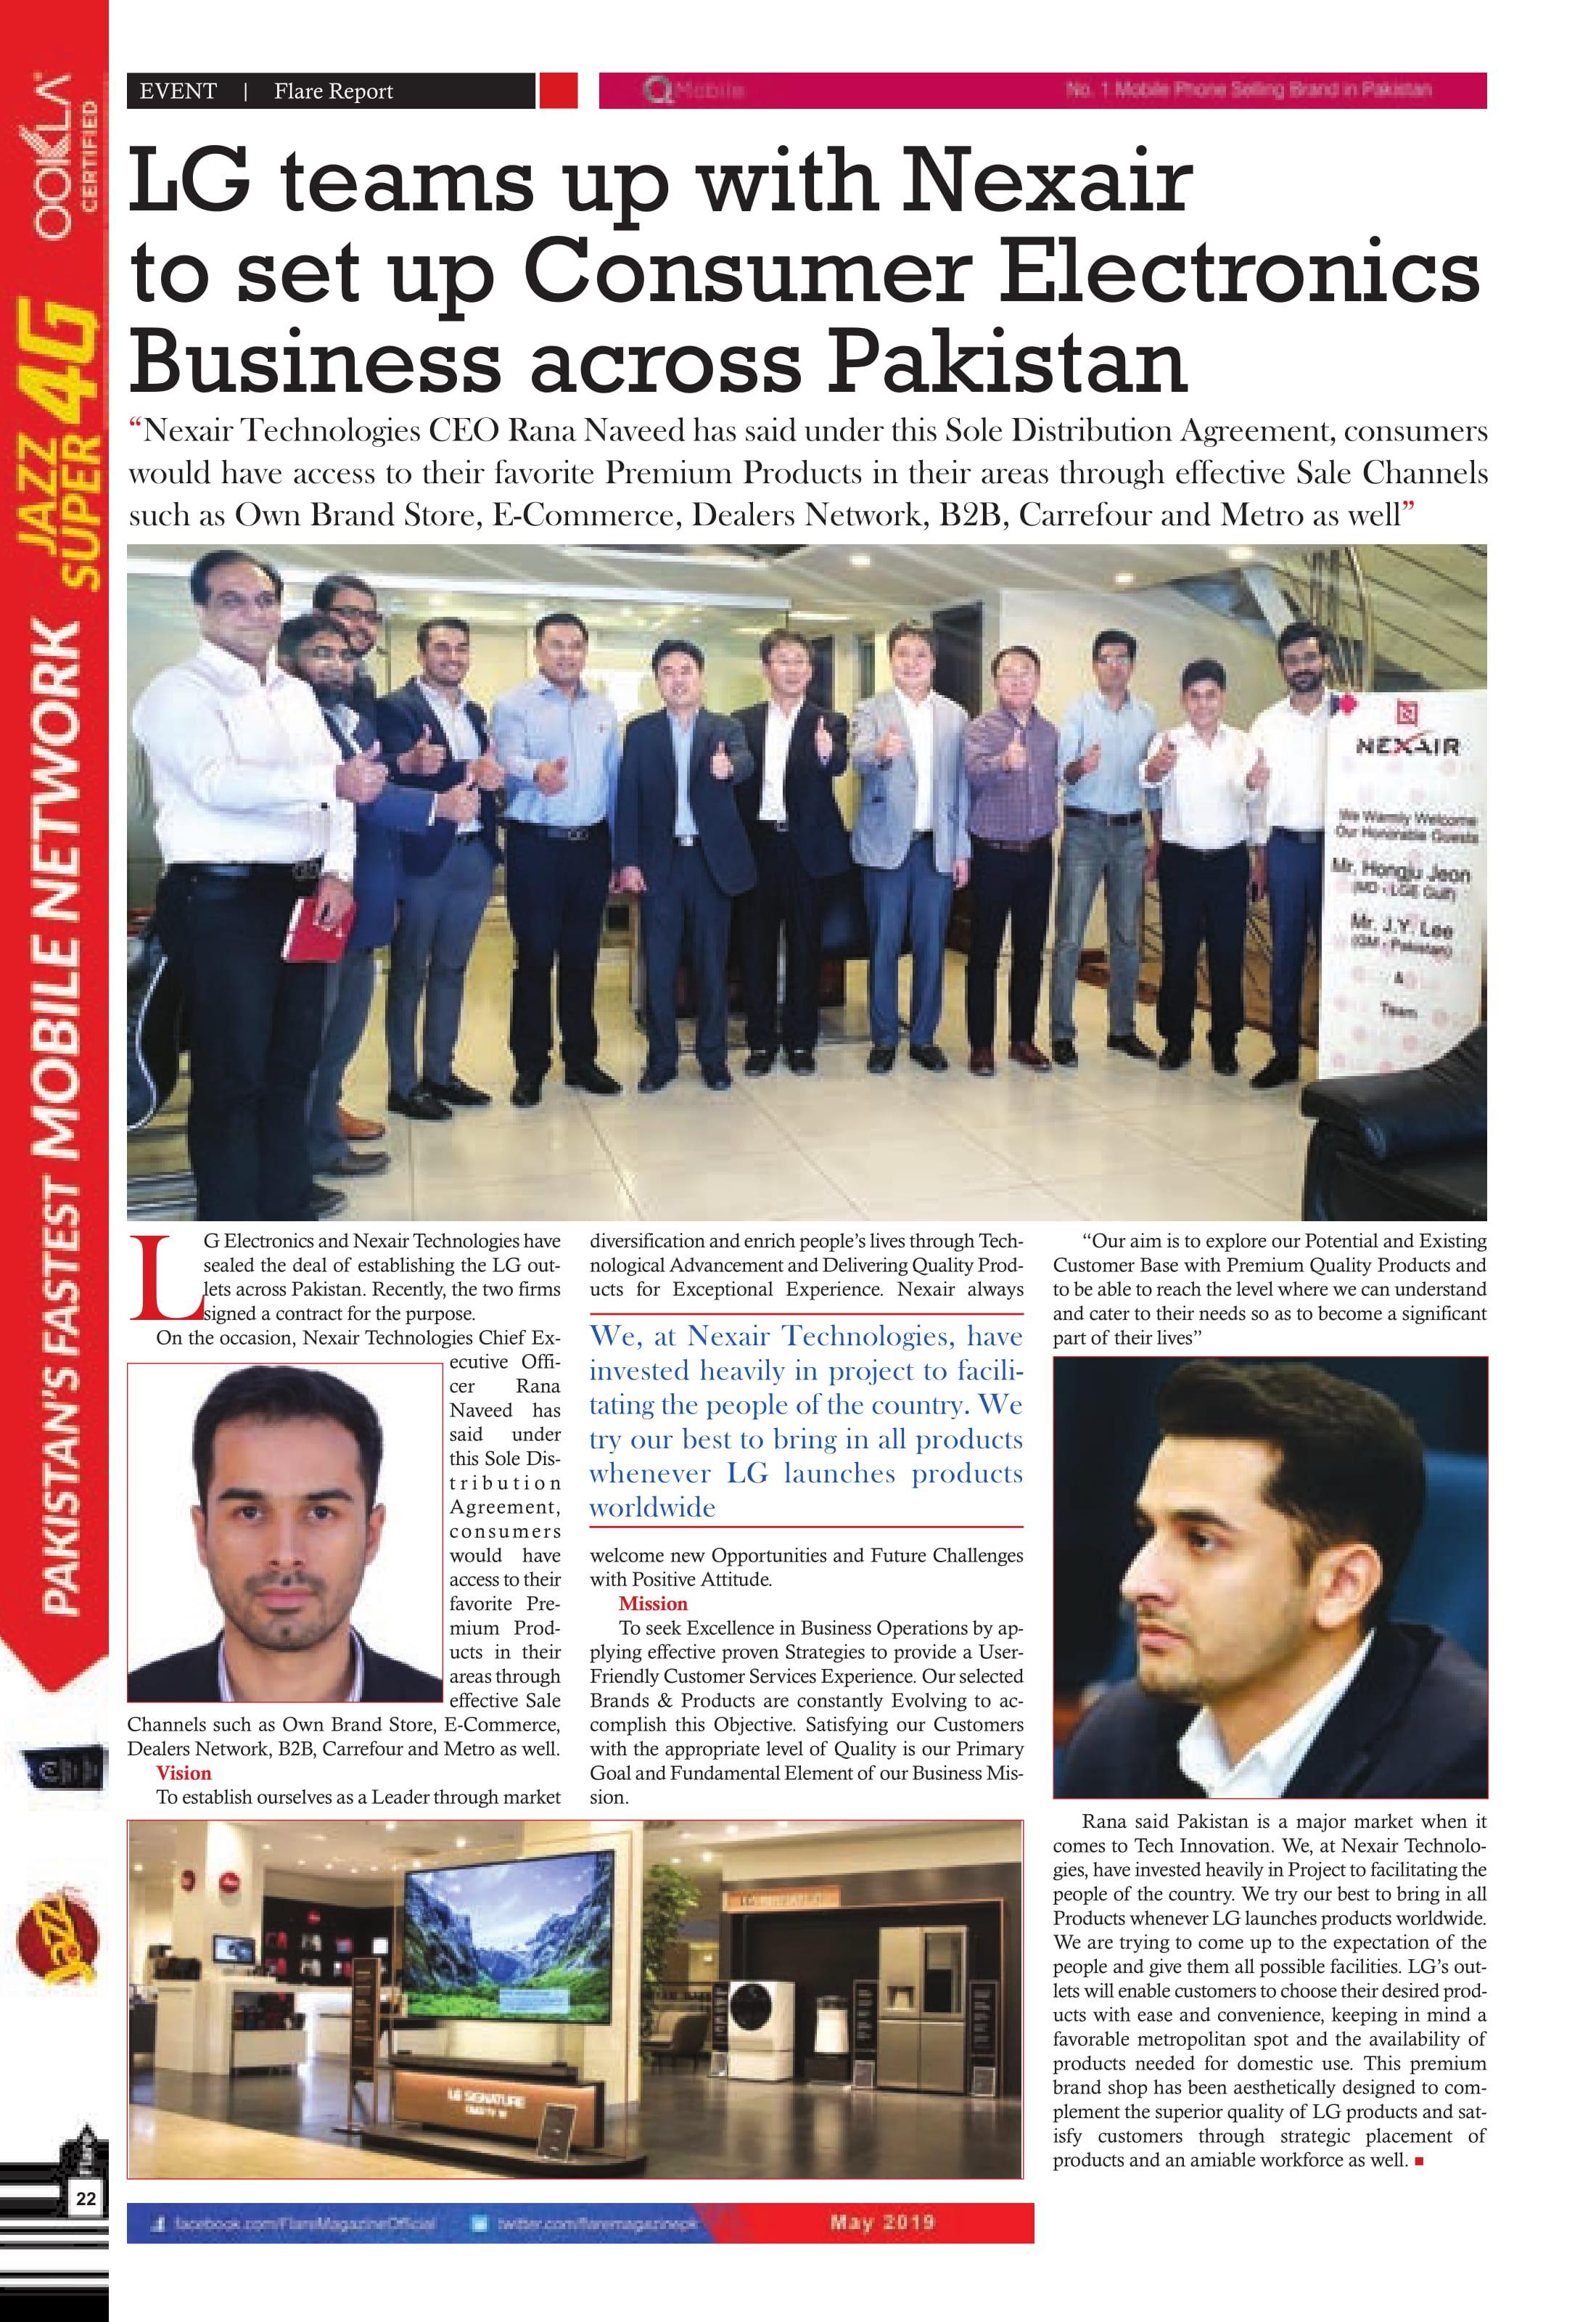 LG teams up Nexair to set up consumer electronics business across pakistan